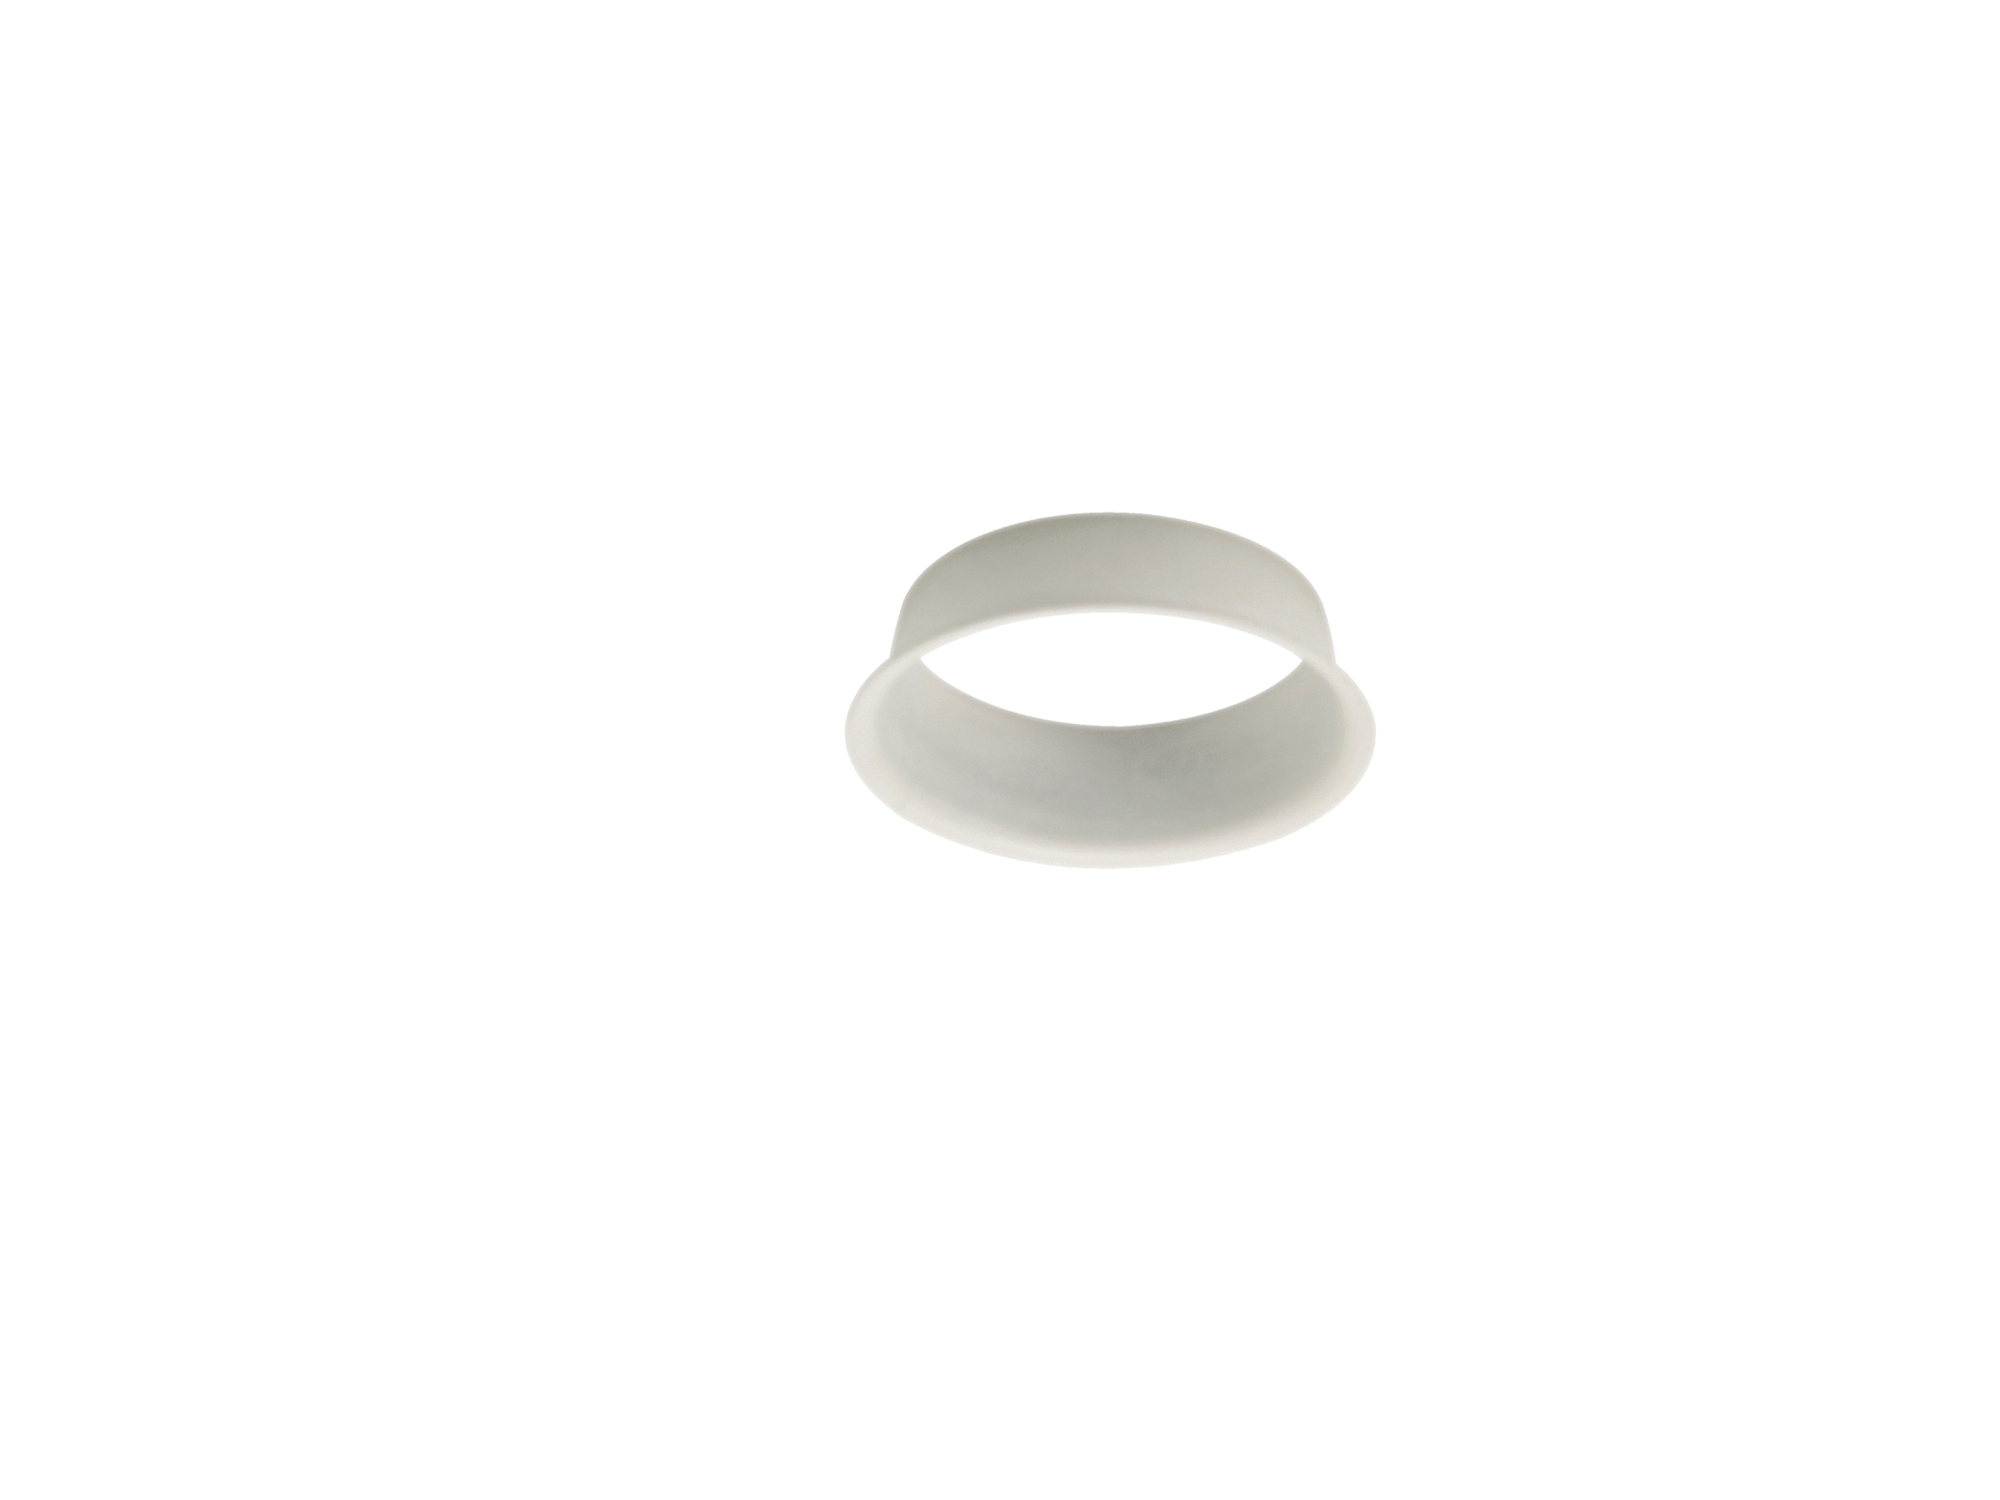 DX200385  Bodar Anti Glare Ring, Matt White, Suitable for All Boda Frames